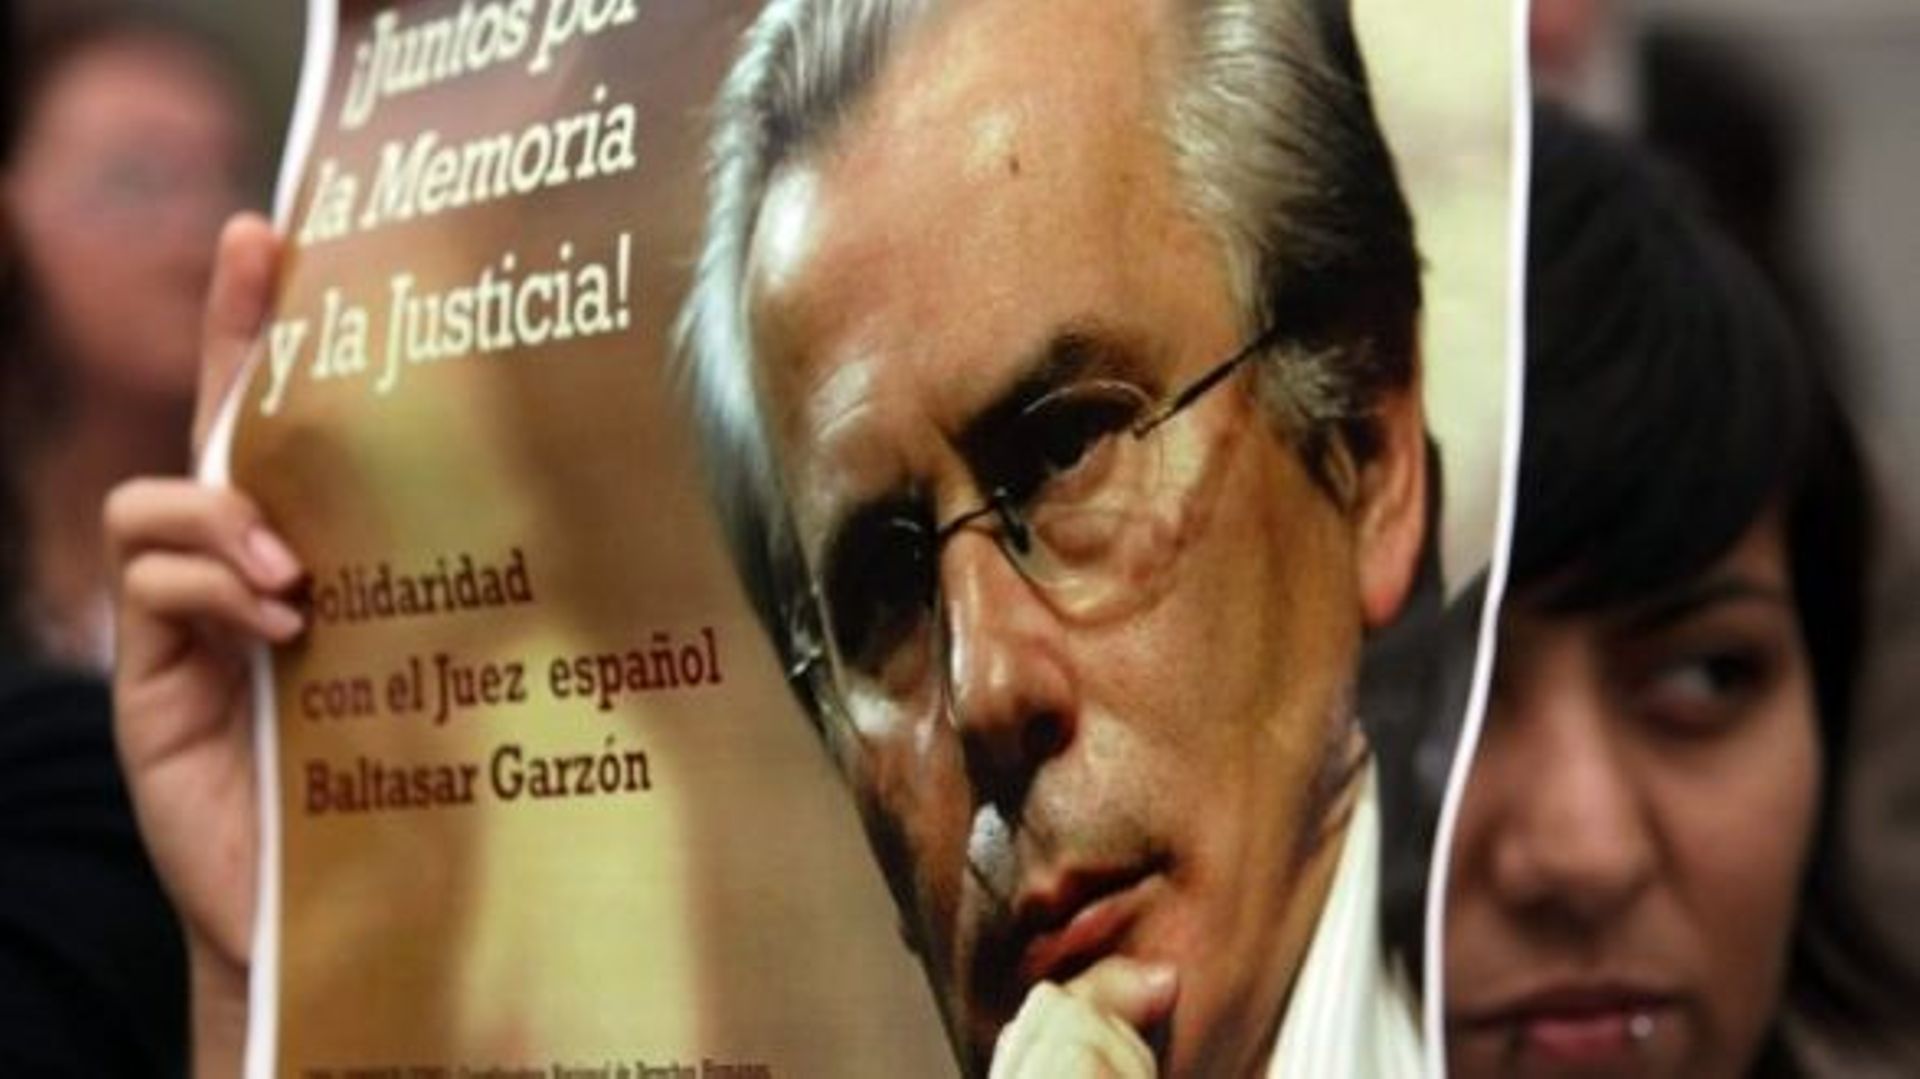 Espagne: le juge Garzon demande à être acquitté